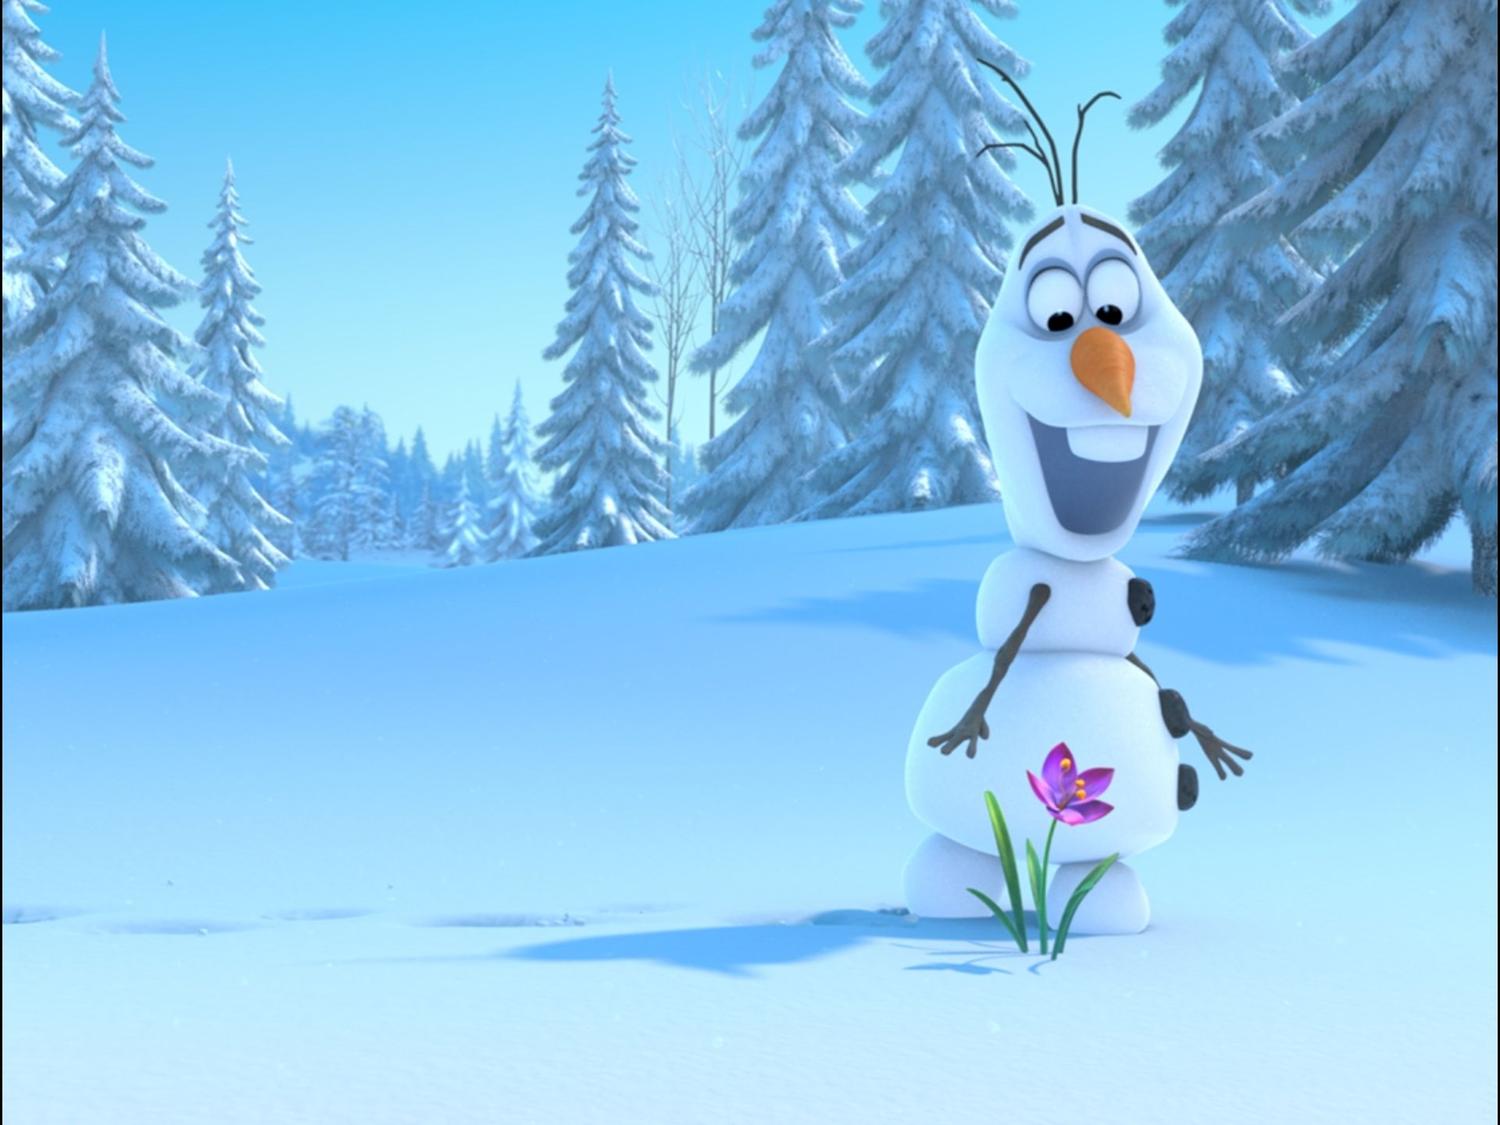 Josh Gad on Playing a Snowman in 'Frozen' | The Takeaway | WNYC ...